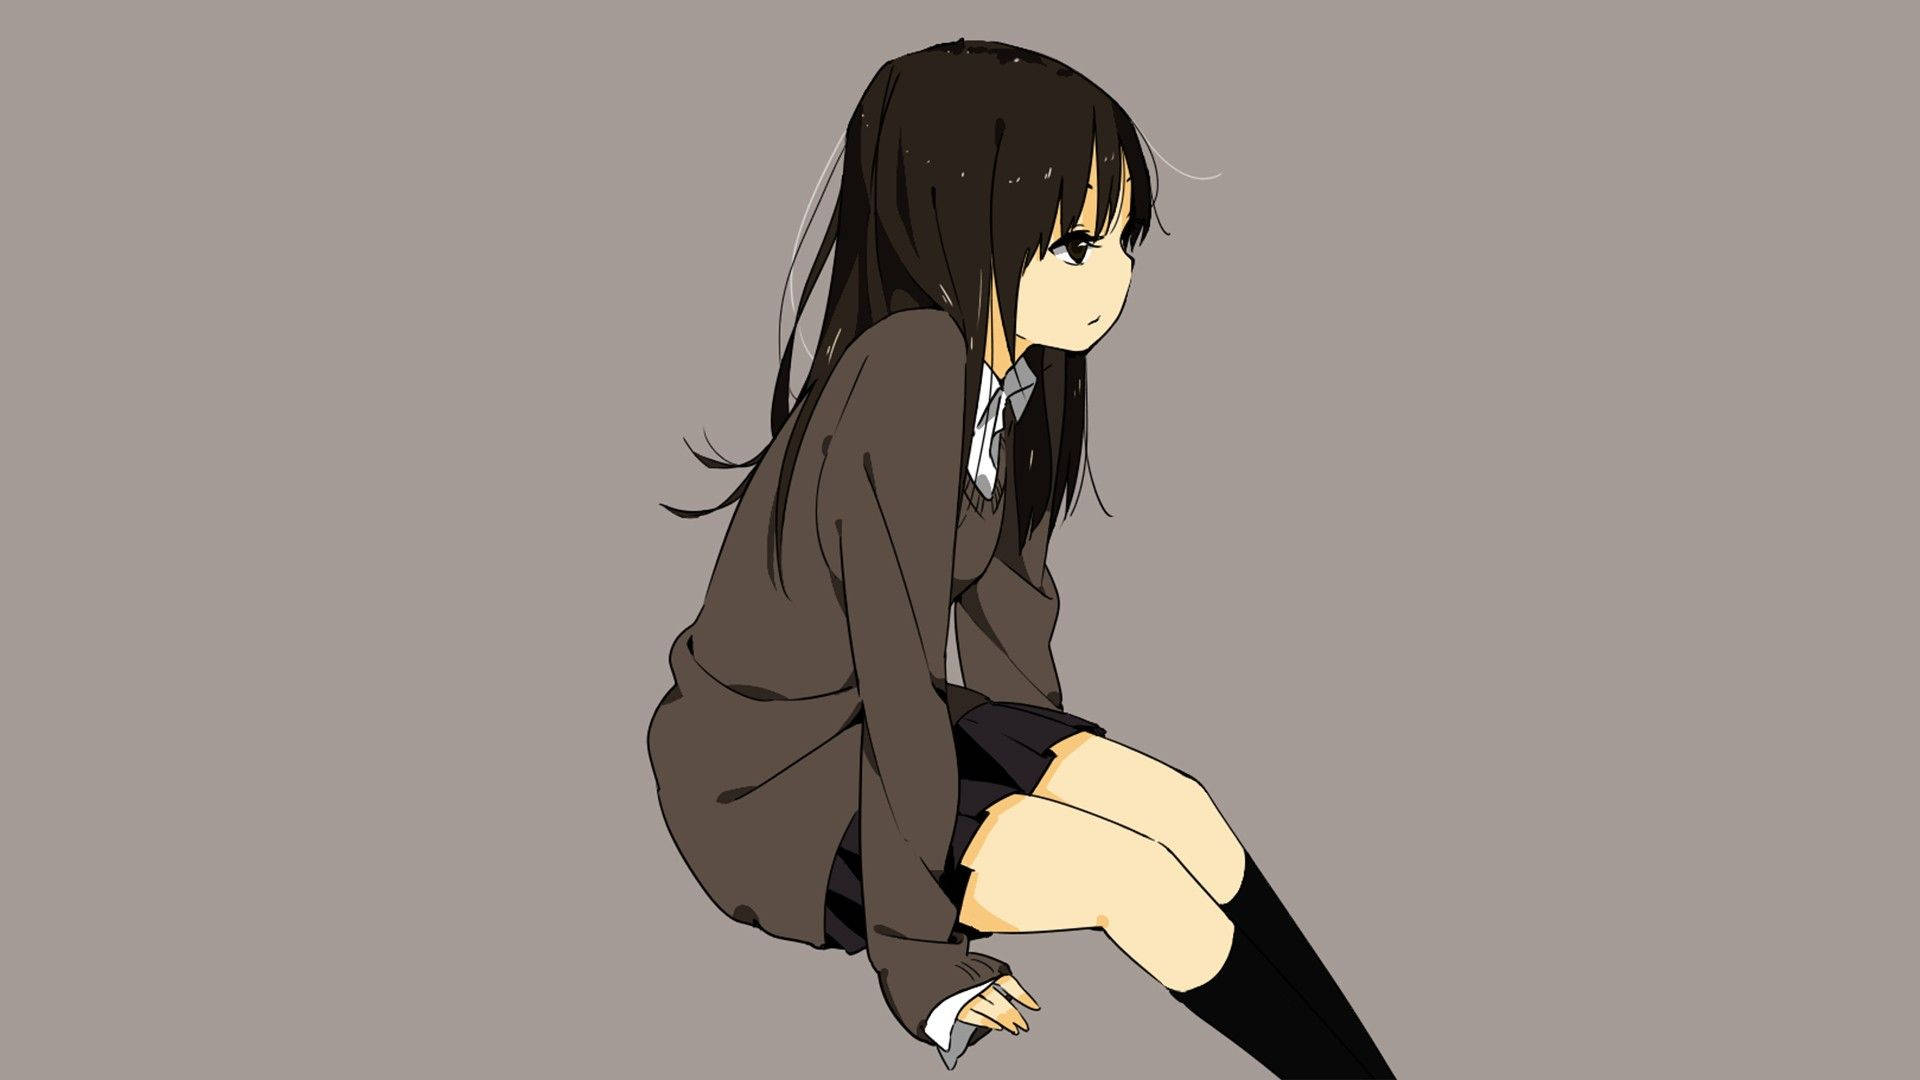 Sad Anime Girl In Grey Aesthetic